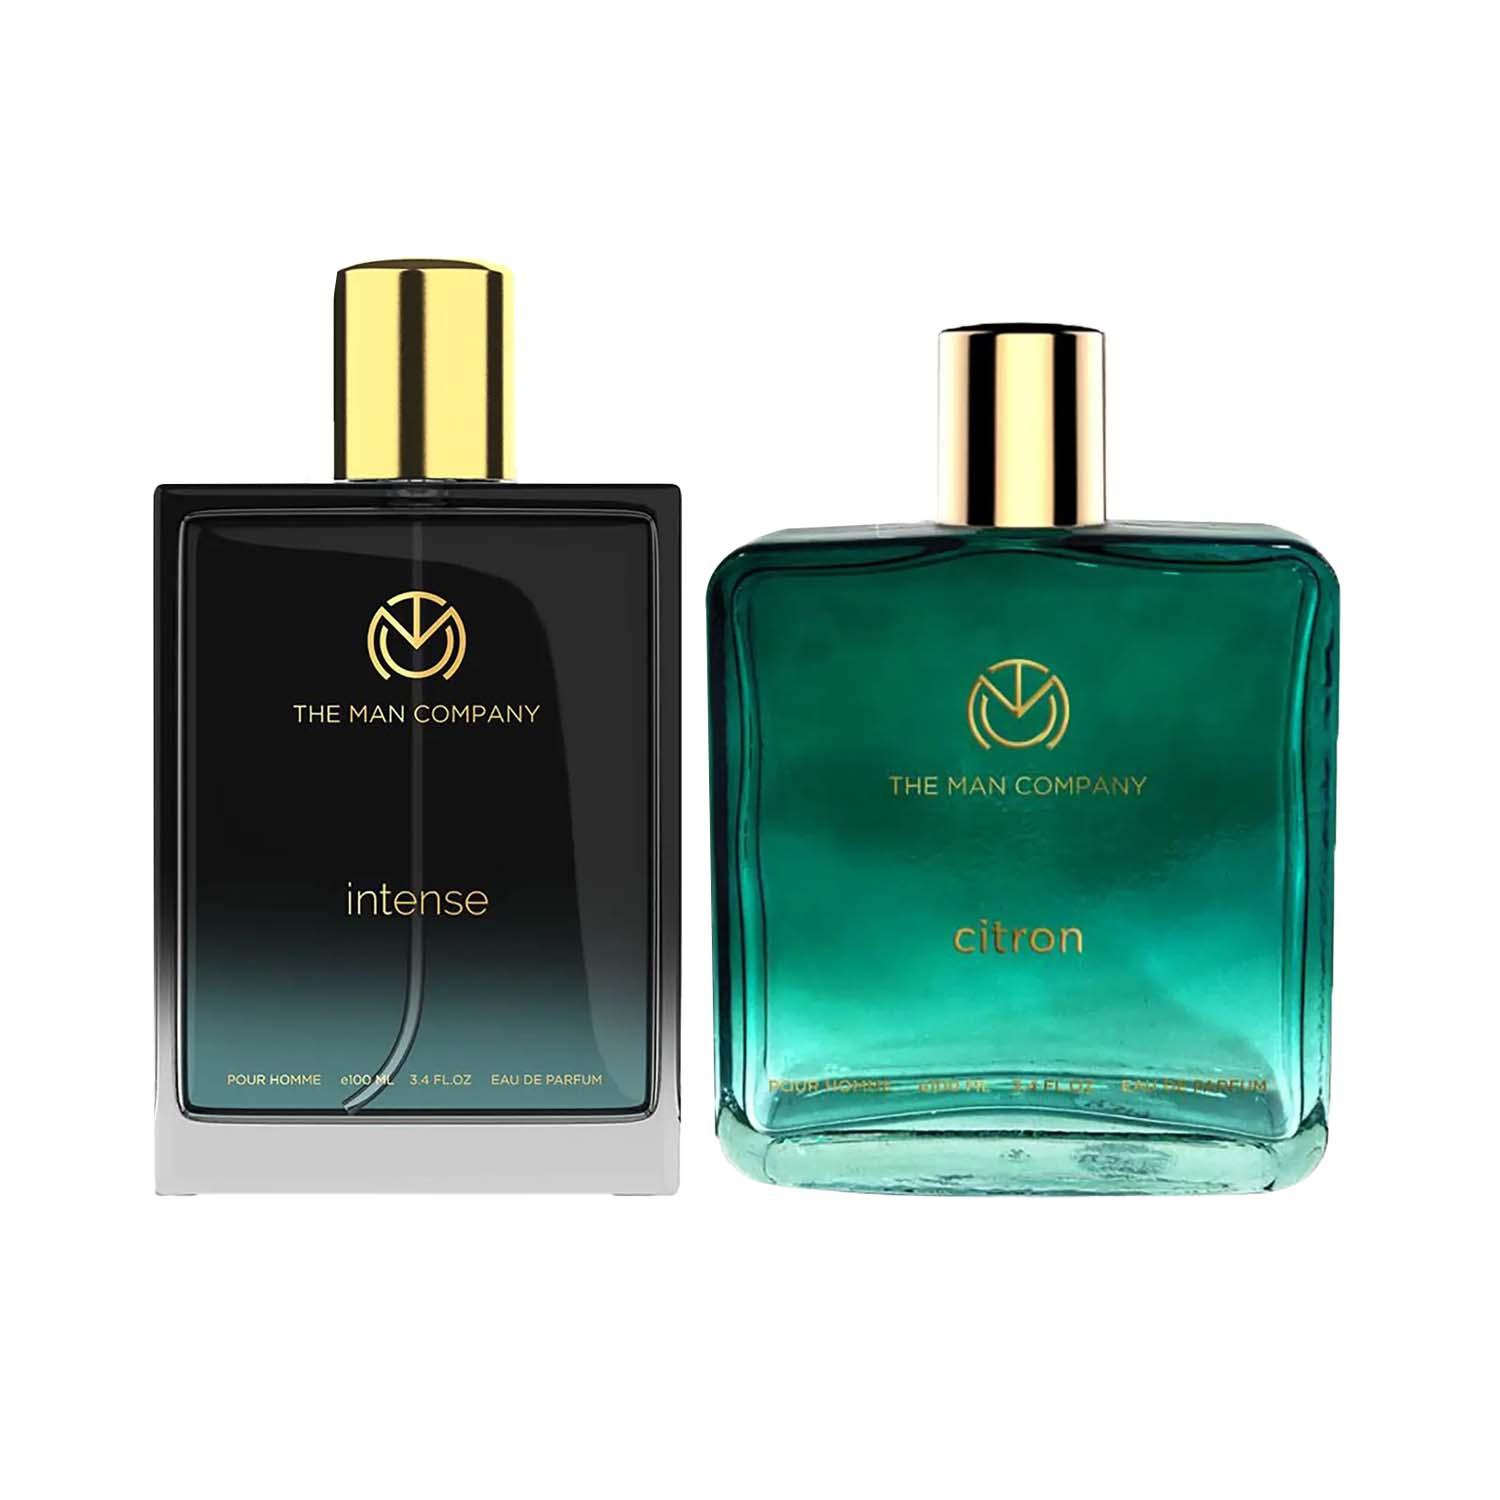 The Man Company | The Man Company Intense Eau De Parfum (100 ml) & Citron Eau De Parfum (100 ml) Combo